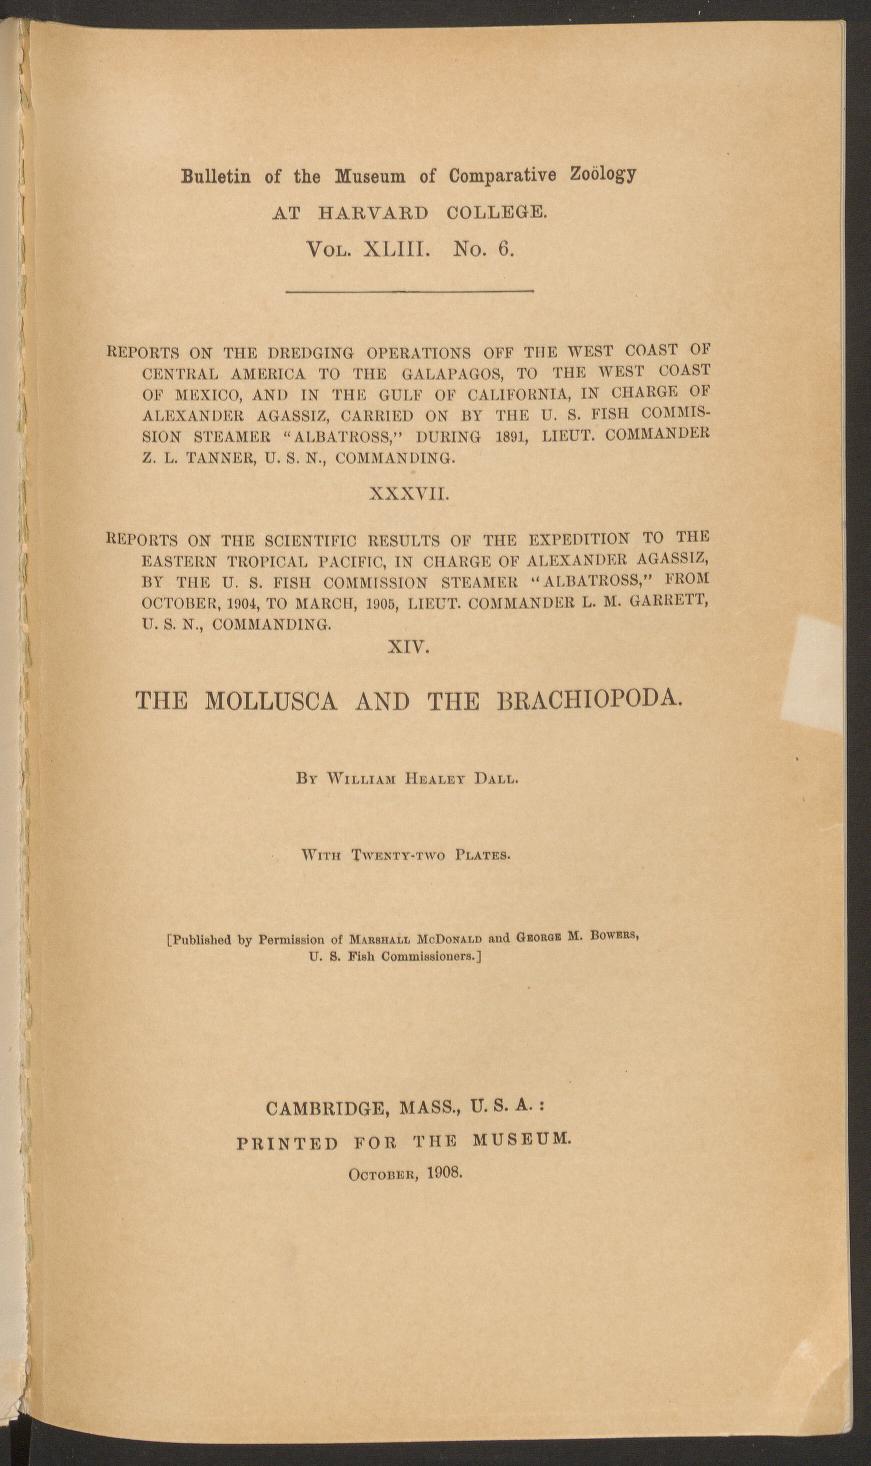 Media type: text, Dall 1908. Description: MCZ Bulletin Vol. XLIII no. 6